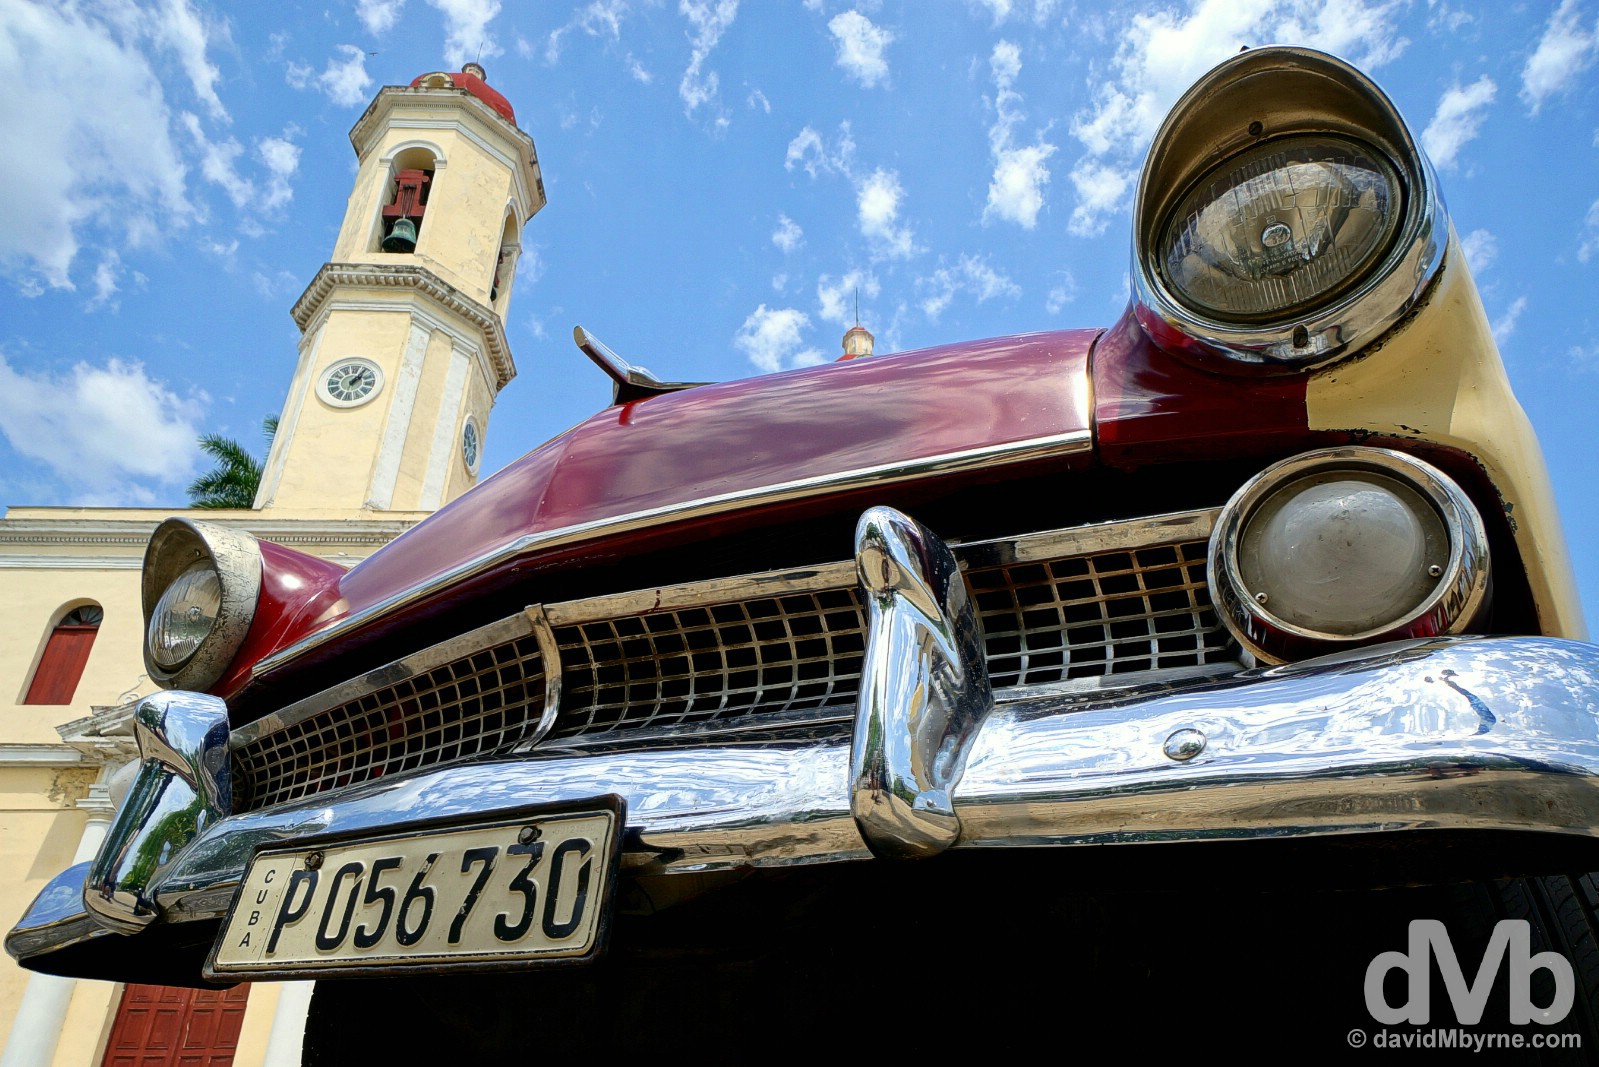 Cienfuegos, Cuba. May 8, 2015.